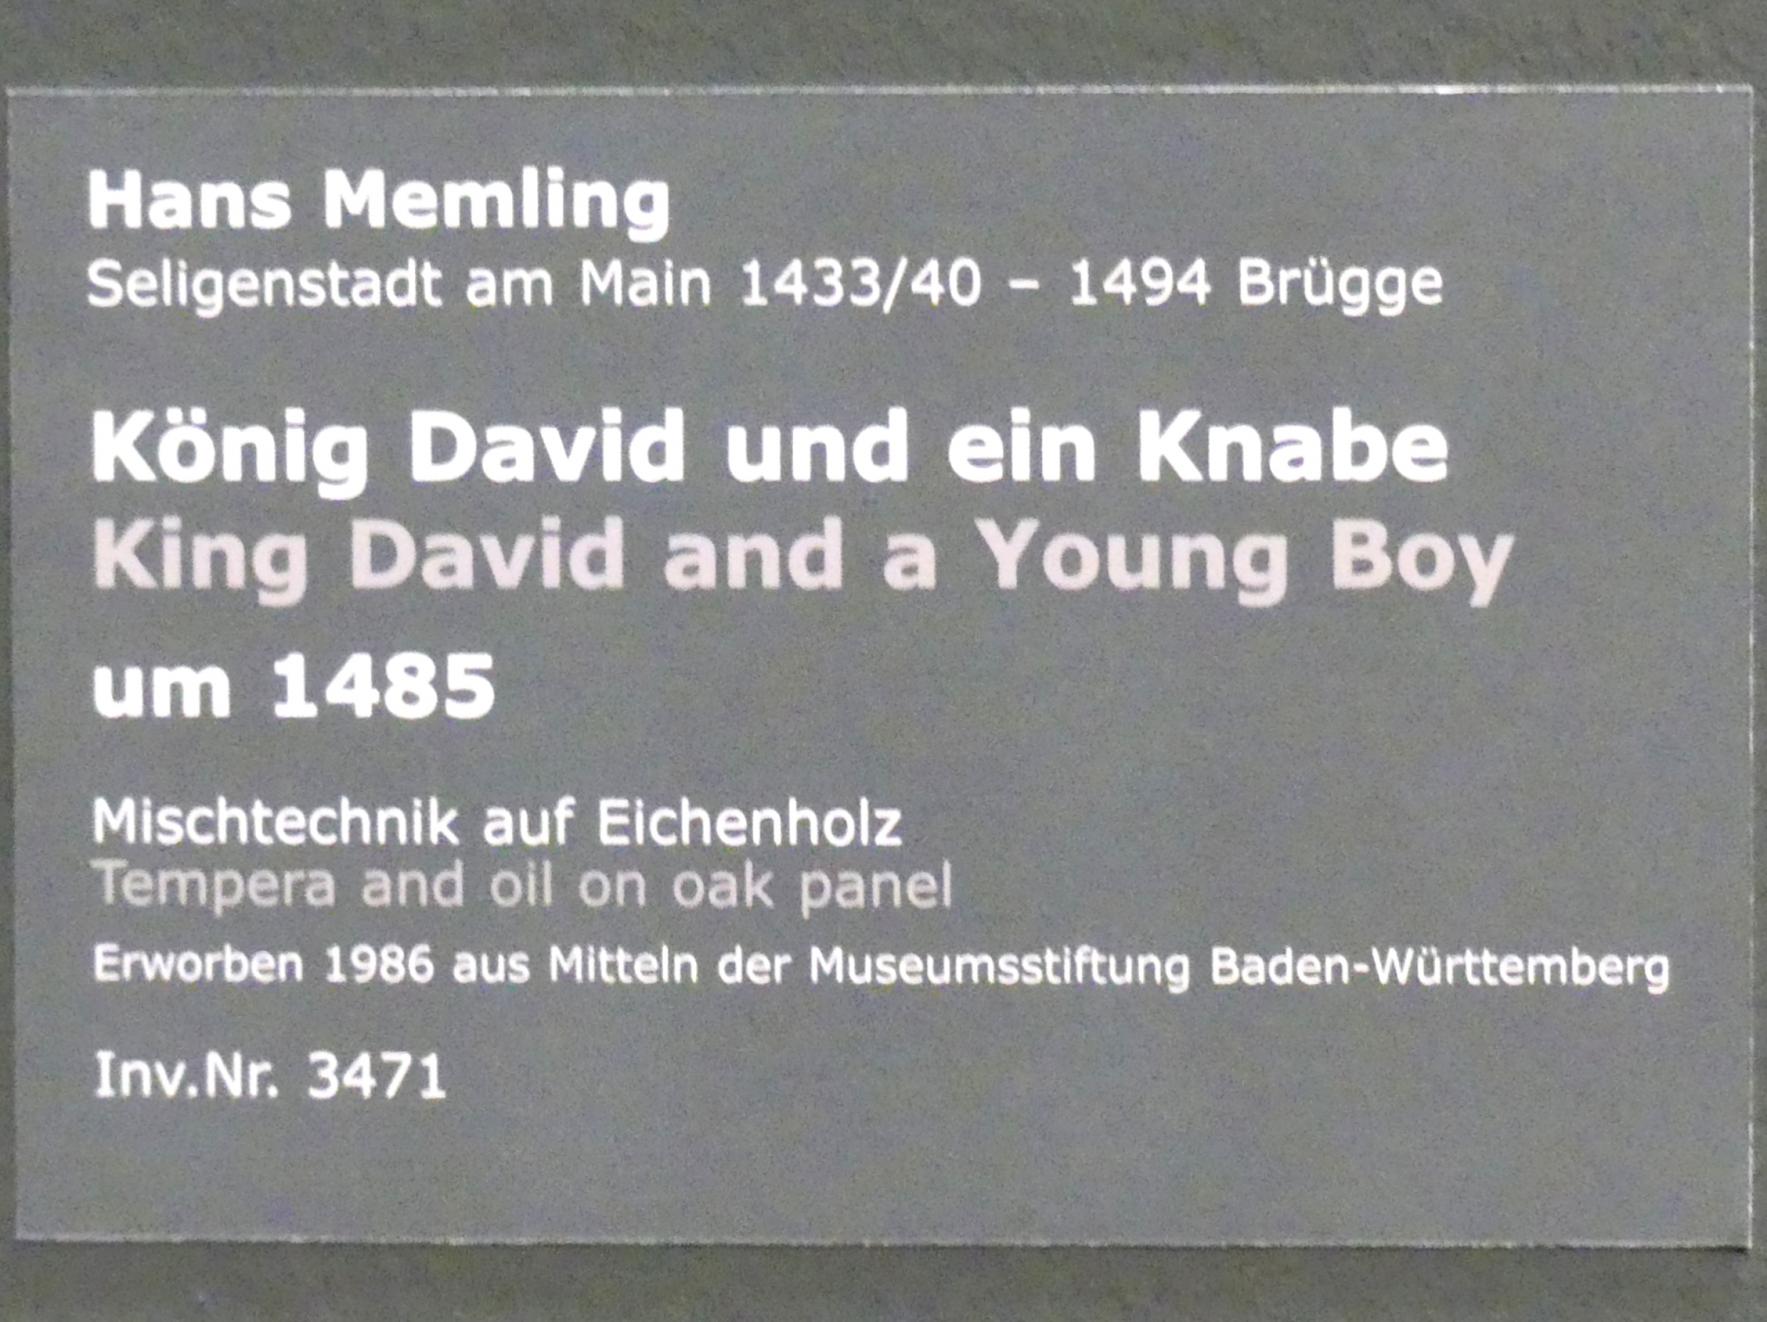 Hans Memling: König David und ein Knabe, um 1485, Bild 2/2